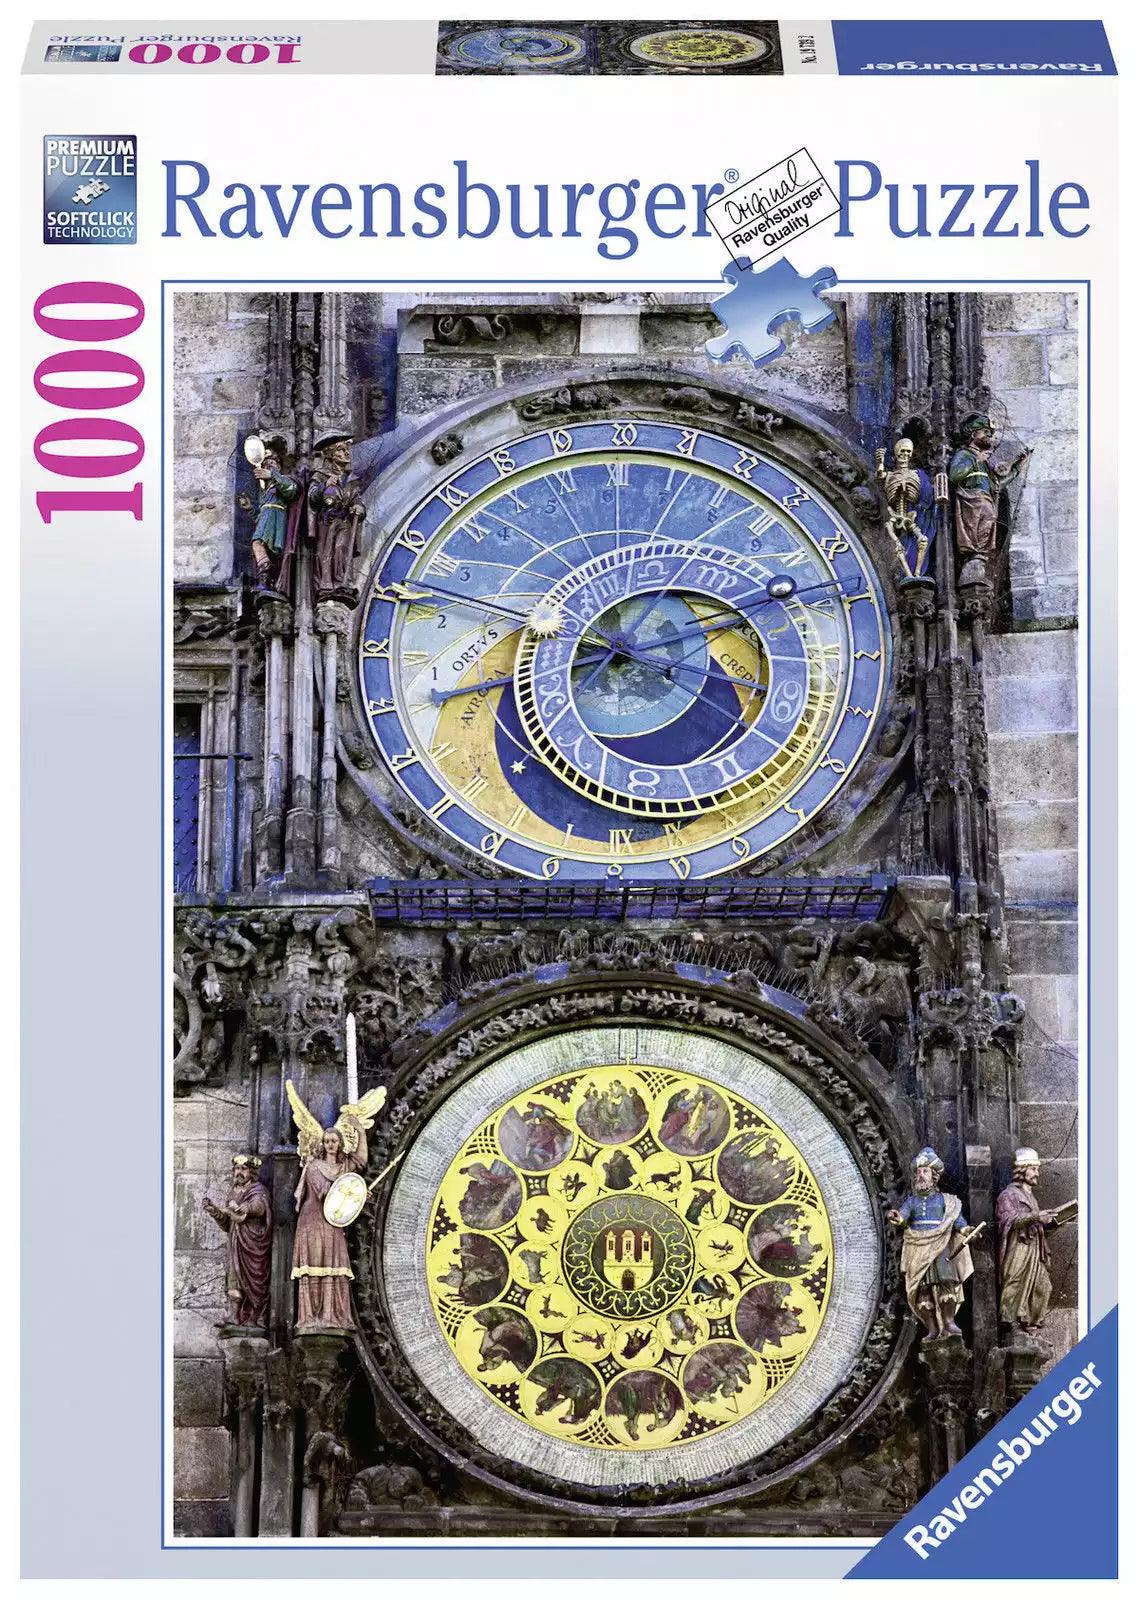 Ravensburger Astronomical Clock Puzzle 1000 Pieces Jigsaw Puzzle - Eclipse Games Puzzles Novelties